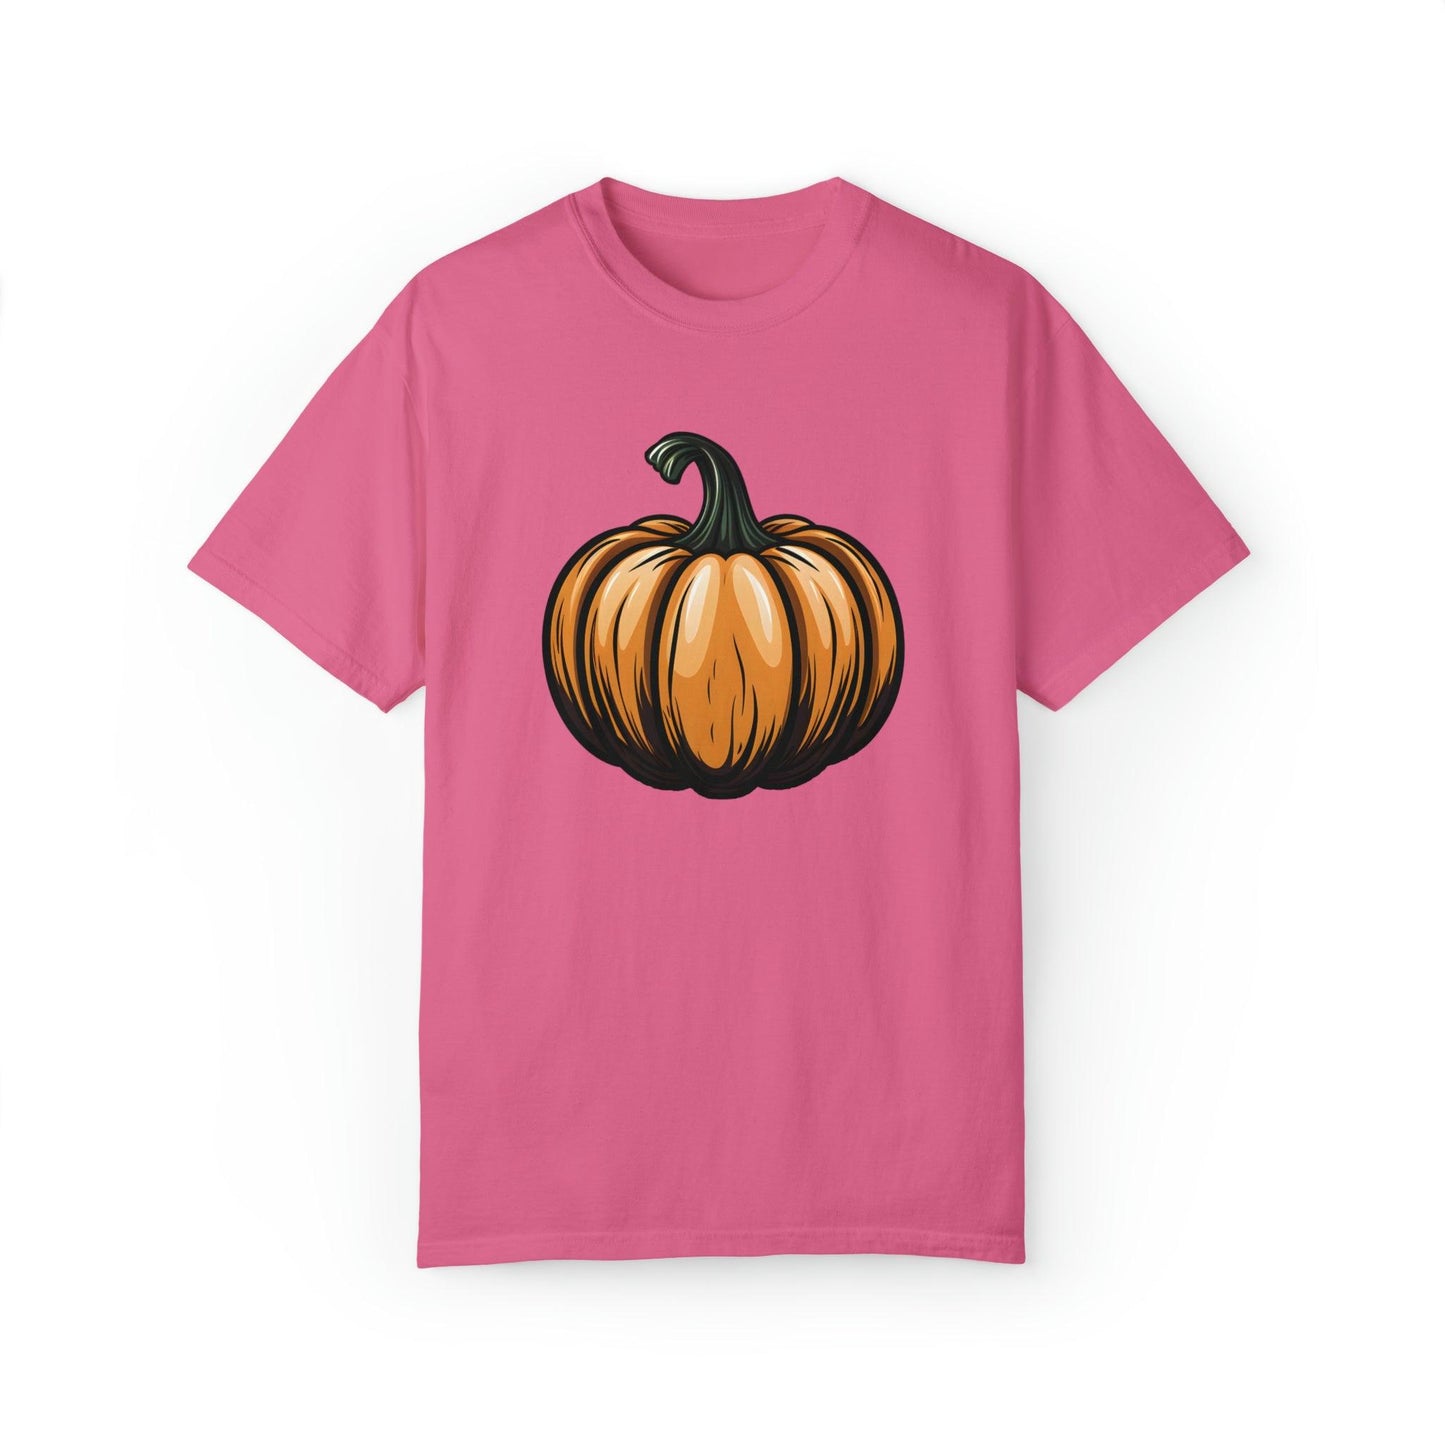 Pumpkin Shirt Halloween Shirt Fall Shirt Halloween Costume Pumpkin T Shirt - Cute Pumpkin Tee fall tshirt Halloween Gift Pumpkin Lover Shirt - Giftsmojo